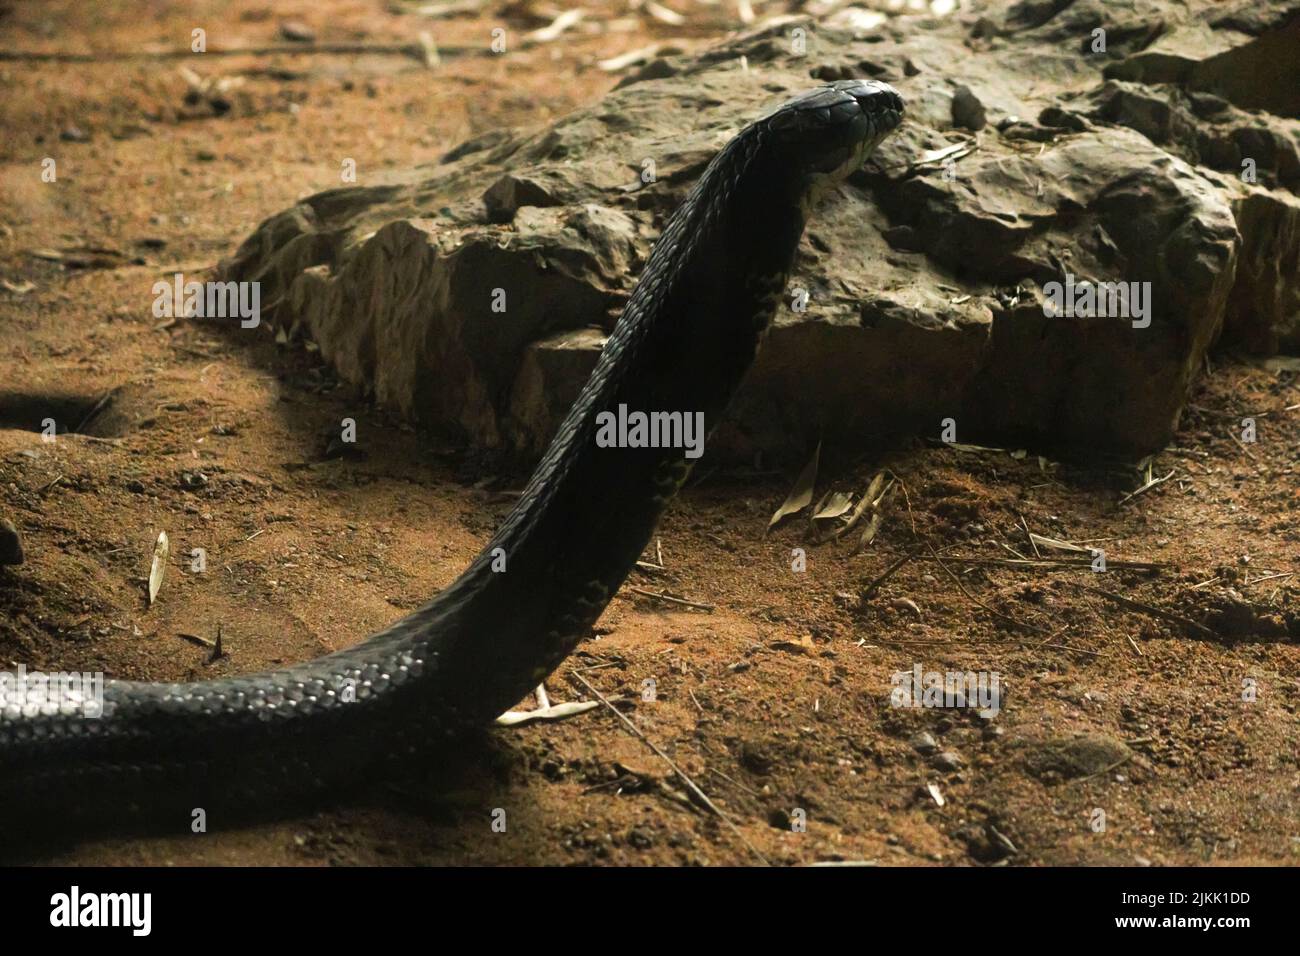 A selective of a king cobra (Ophiophagus hannah) near a stone Stock Photo